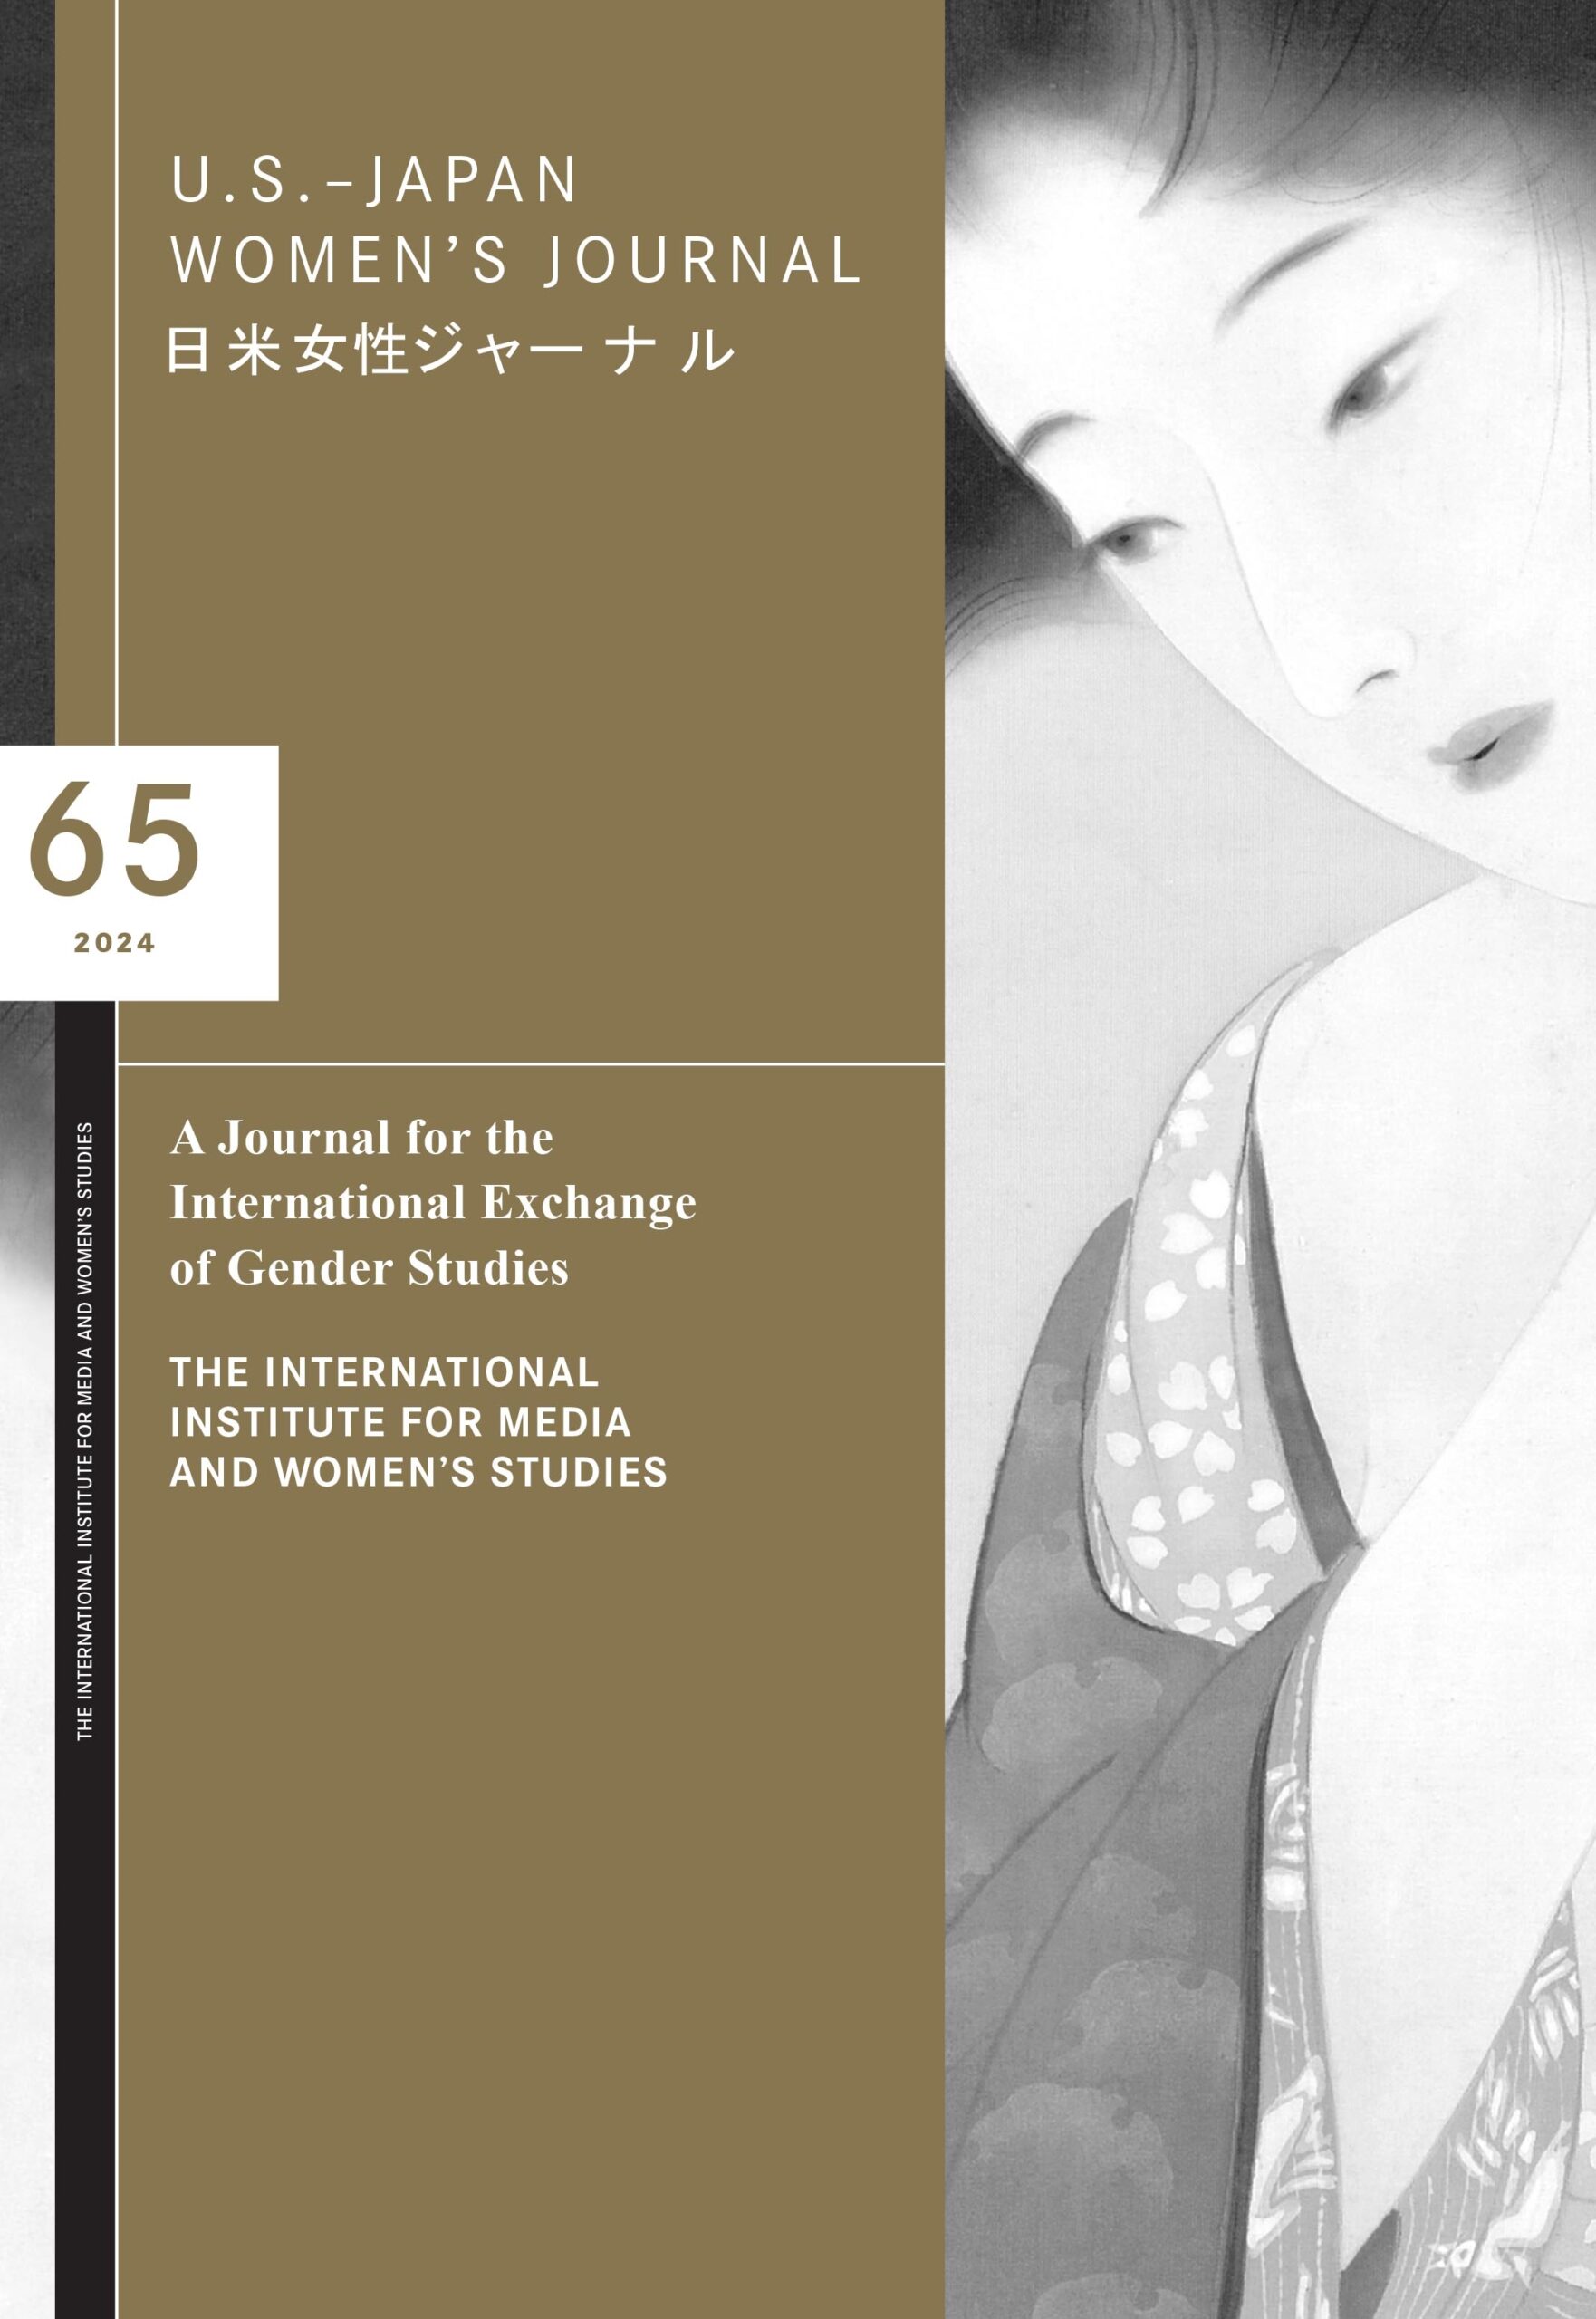 U.S.-Japan Women's Journal